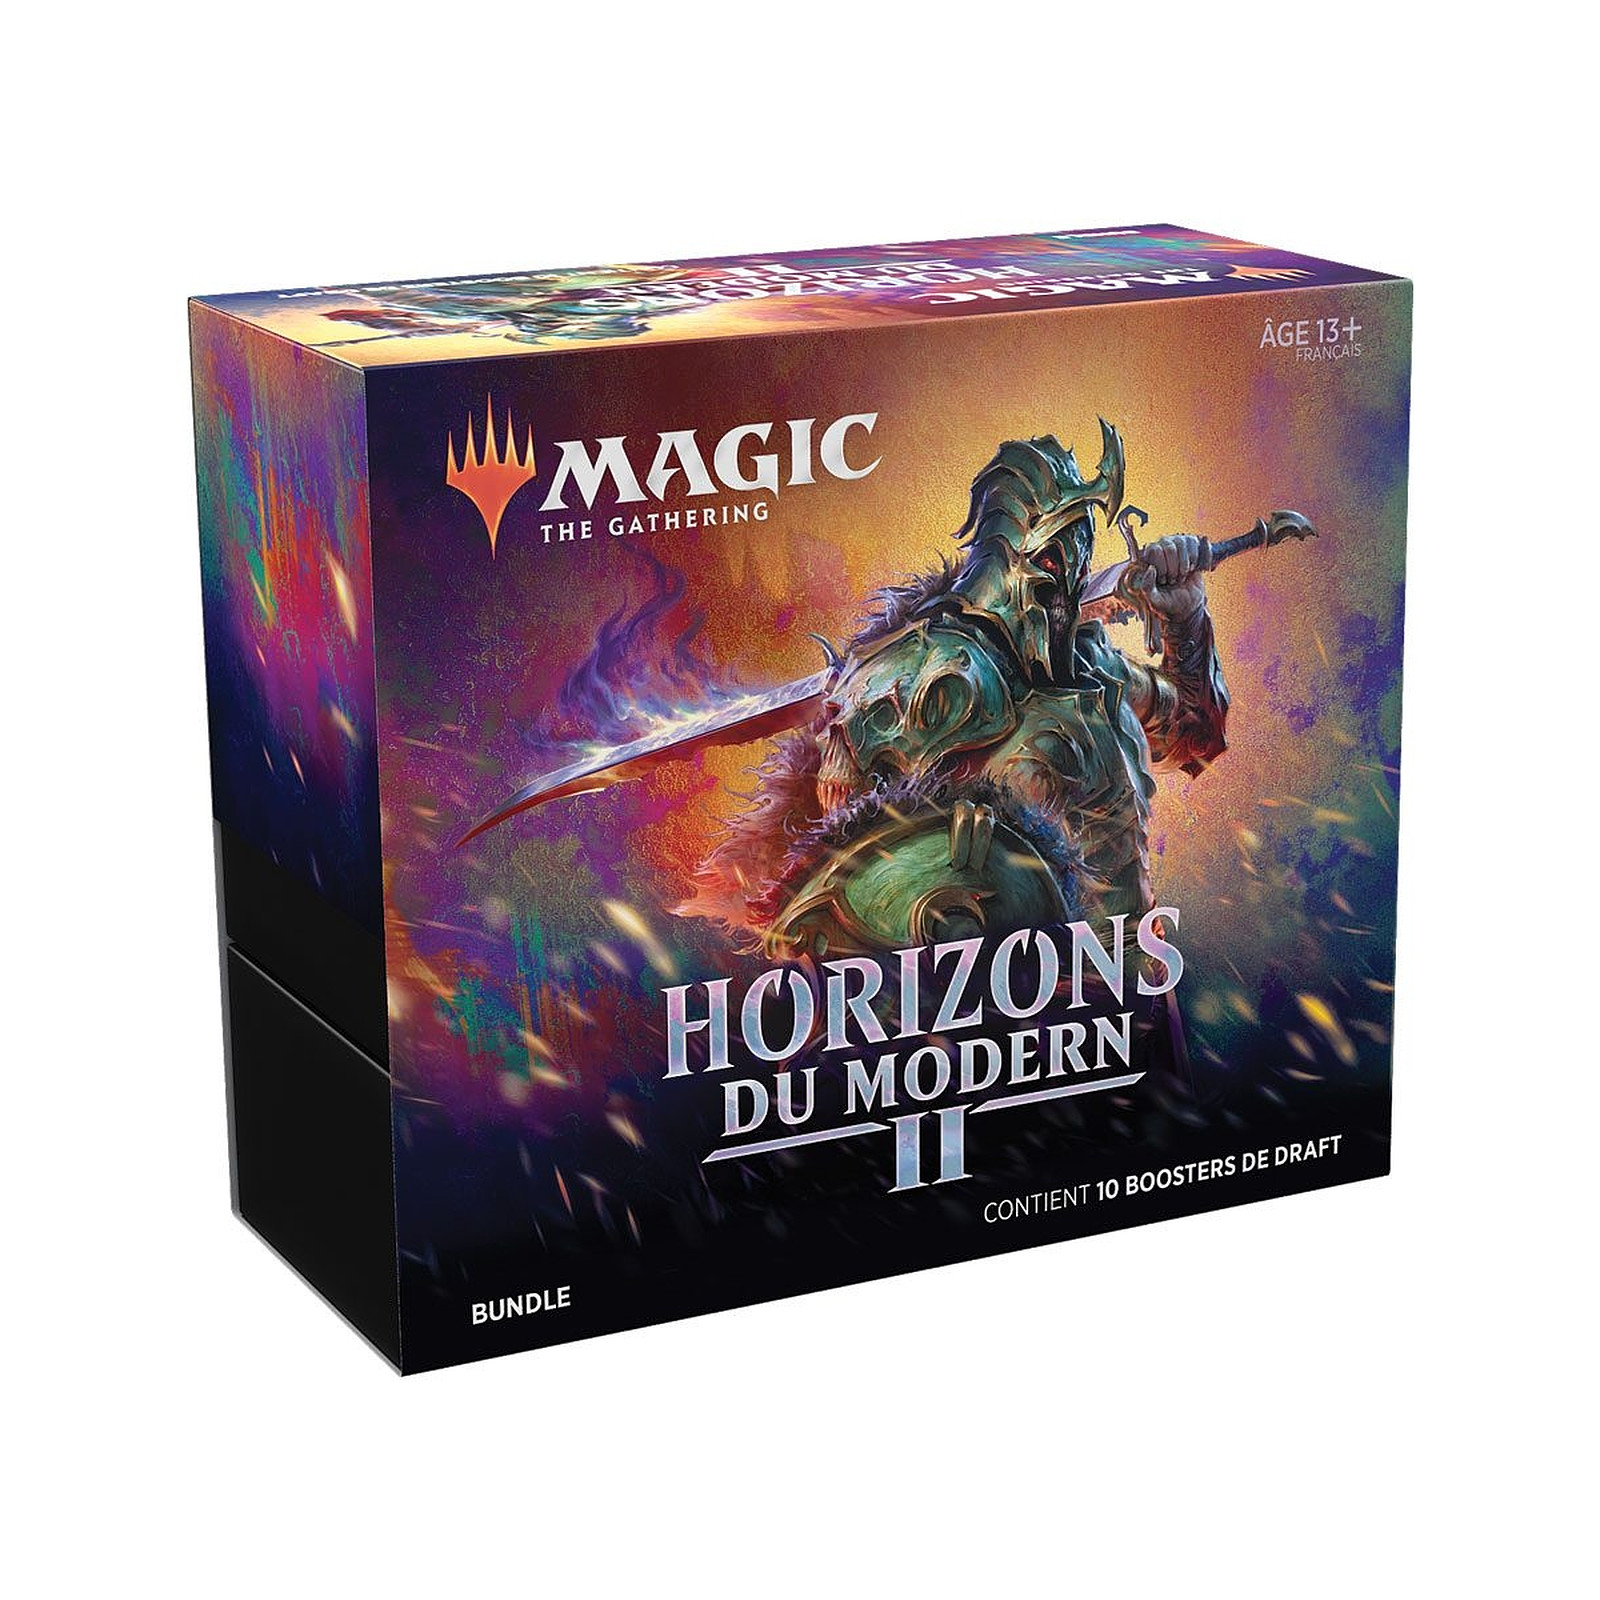 Magic the Gathering - Bundle Horizons du Modern 2 - Jeux de cartes Wizards Of The Coast